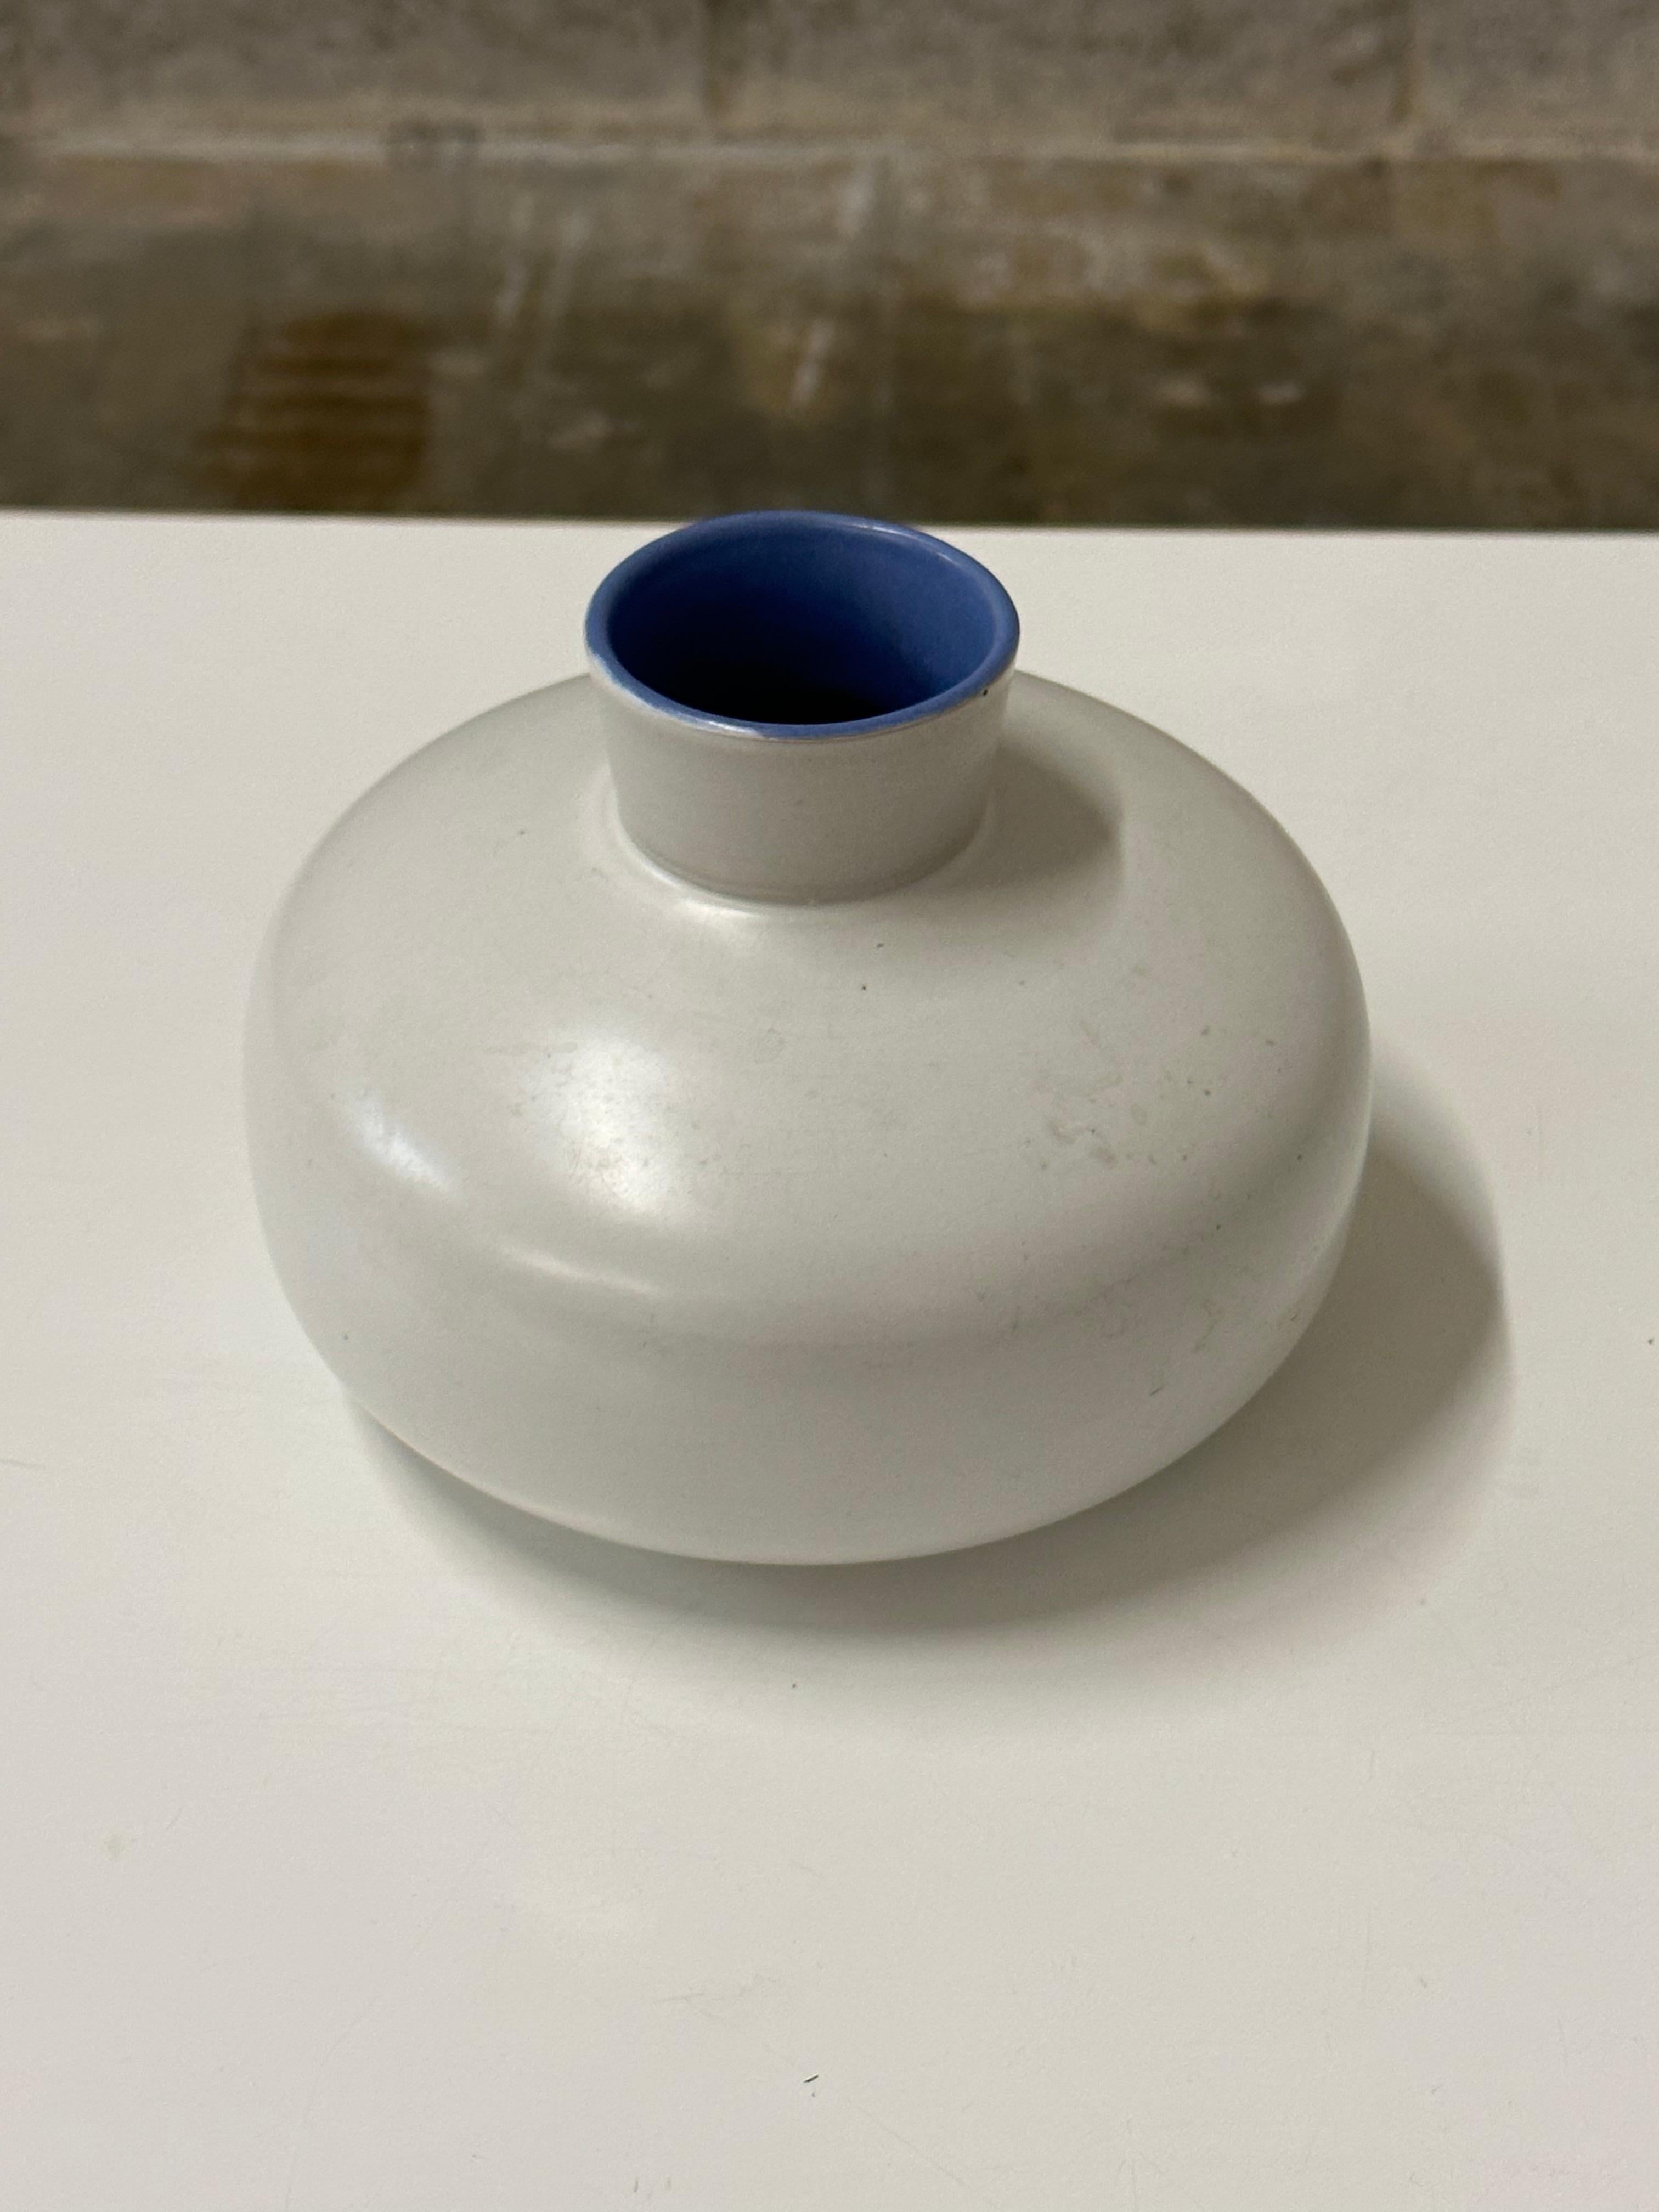 Un vase bas et large inhabituel de Jerk Werkmäster pour Nittsjö. Whiting se caractérise par un corps trapu et un manche court, avec une couleur intérieure bleue très intéressante par rapport au corps blanc plat. Une forme et une couleur très